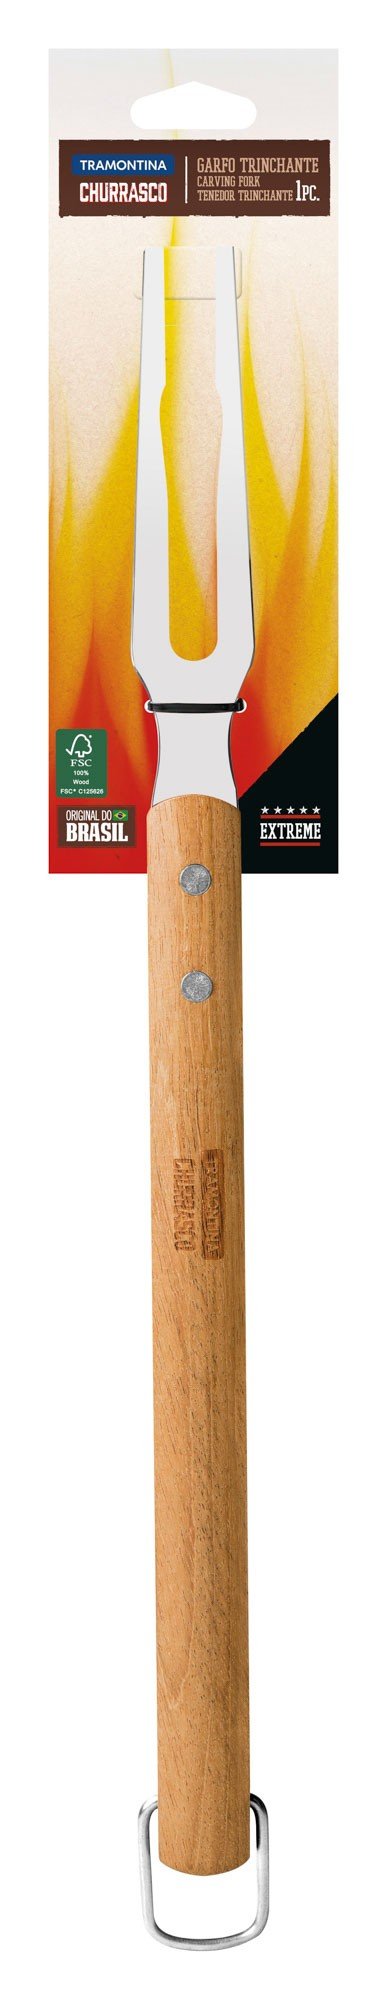 Garfo Trinchante Churrasco com Lâmina em Aço Inox e Cabo de Madeira 47,1 cm